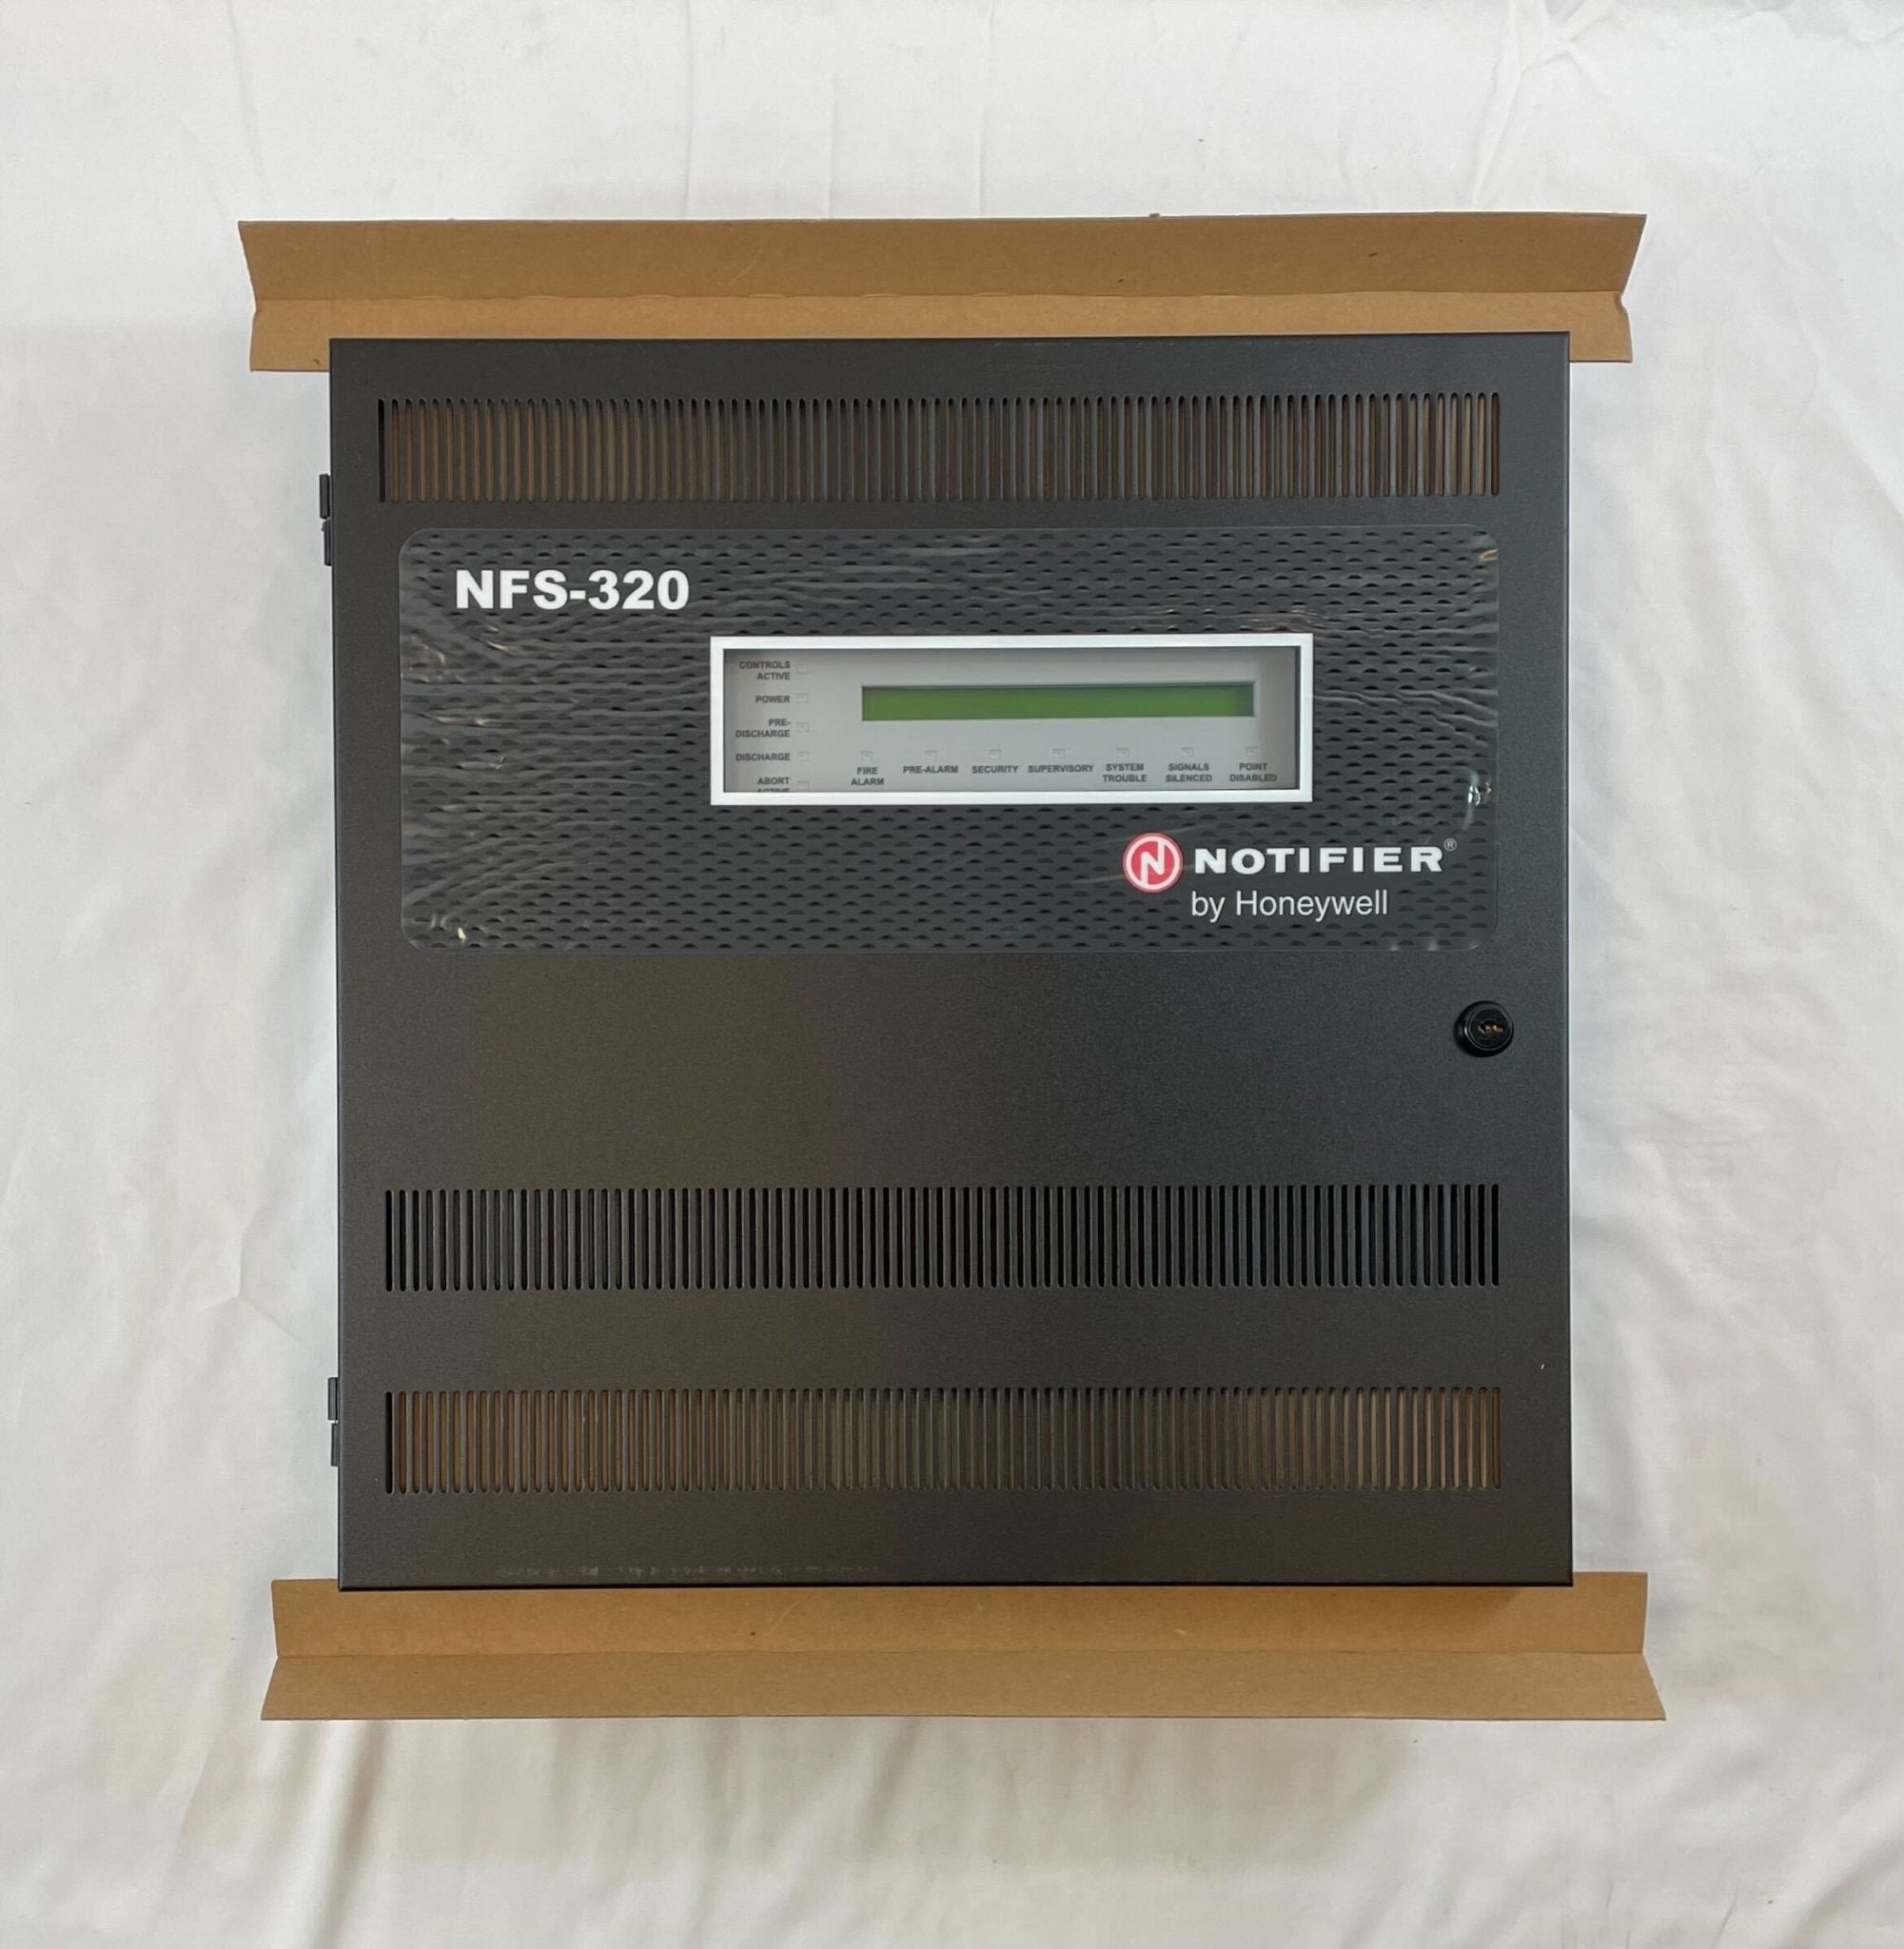 Notifier NFS-320 - The Fire Alarm Supplier